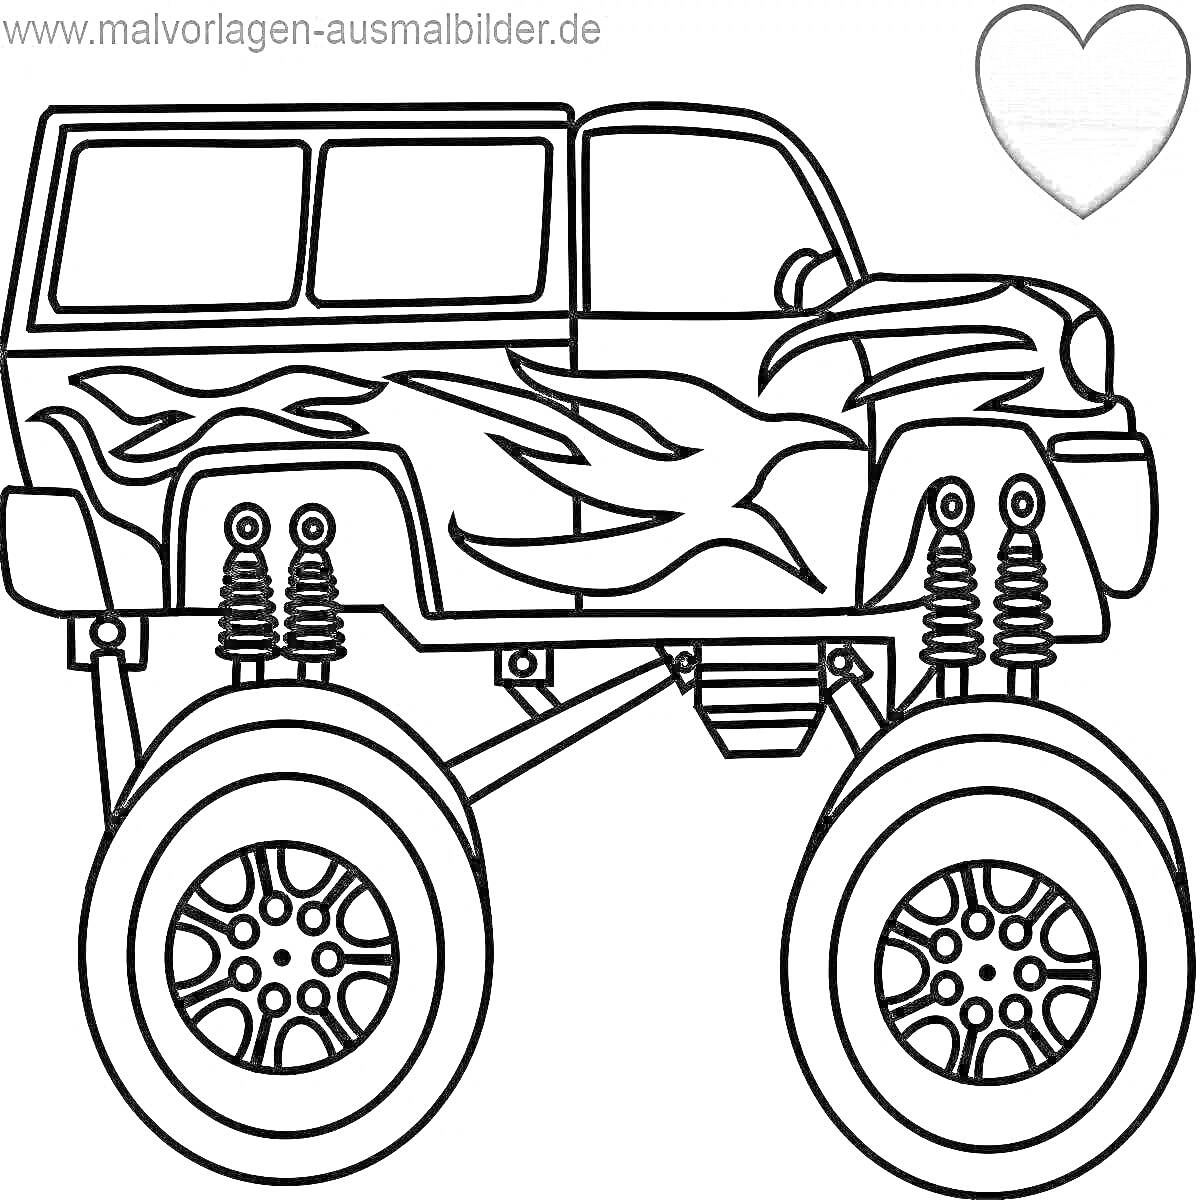 Раскраска Монстр-трак: джип с огненным узором, огромными подвесками и колесами, сердце.